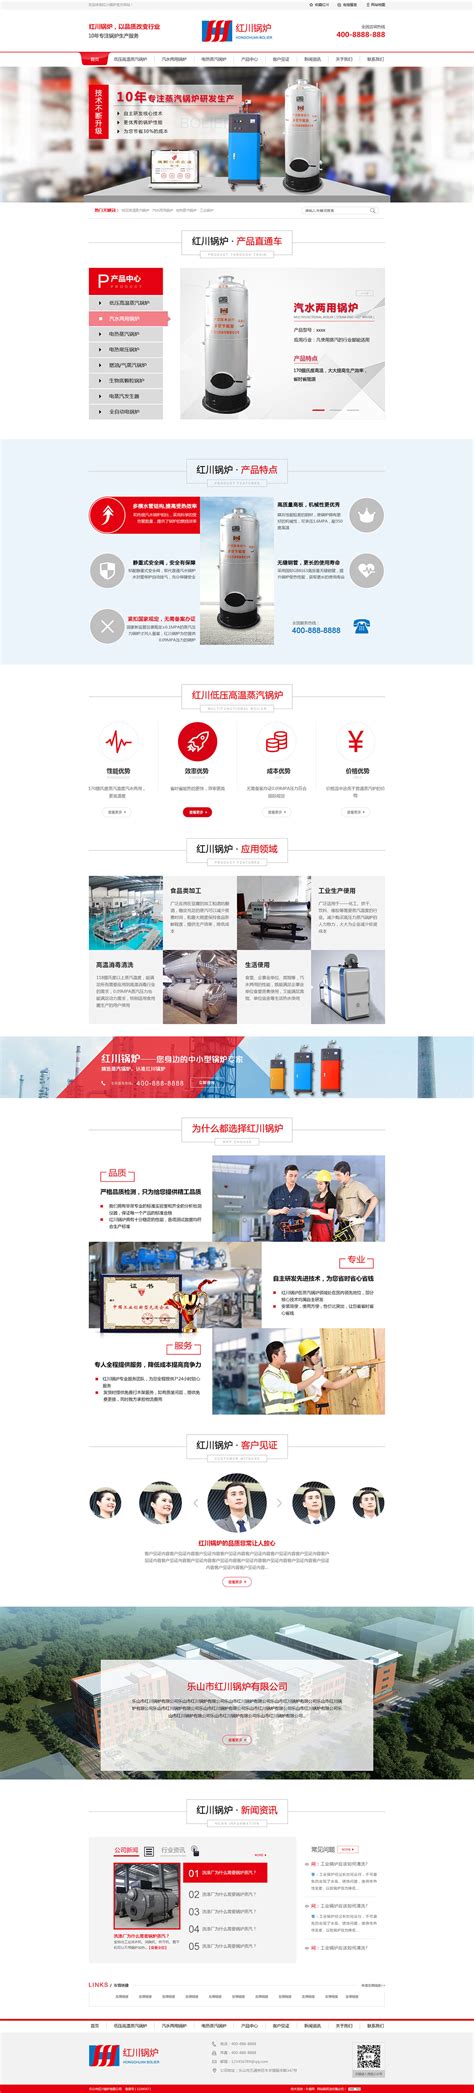 承压热水锅炉-上海韩斯锅炉有限公司